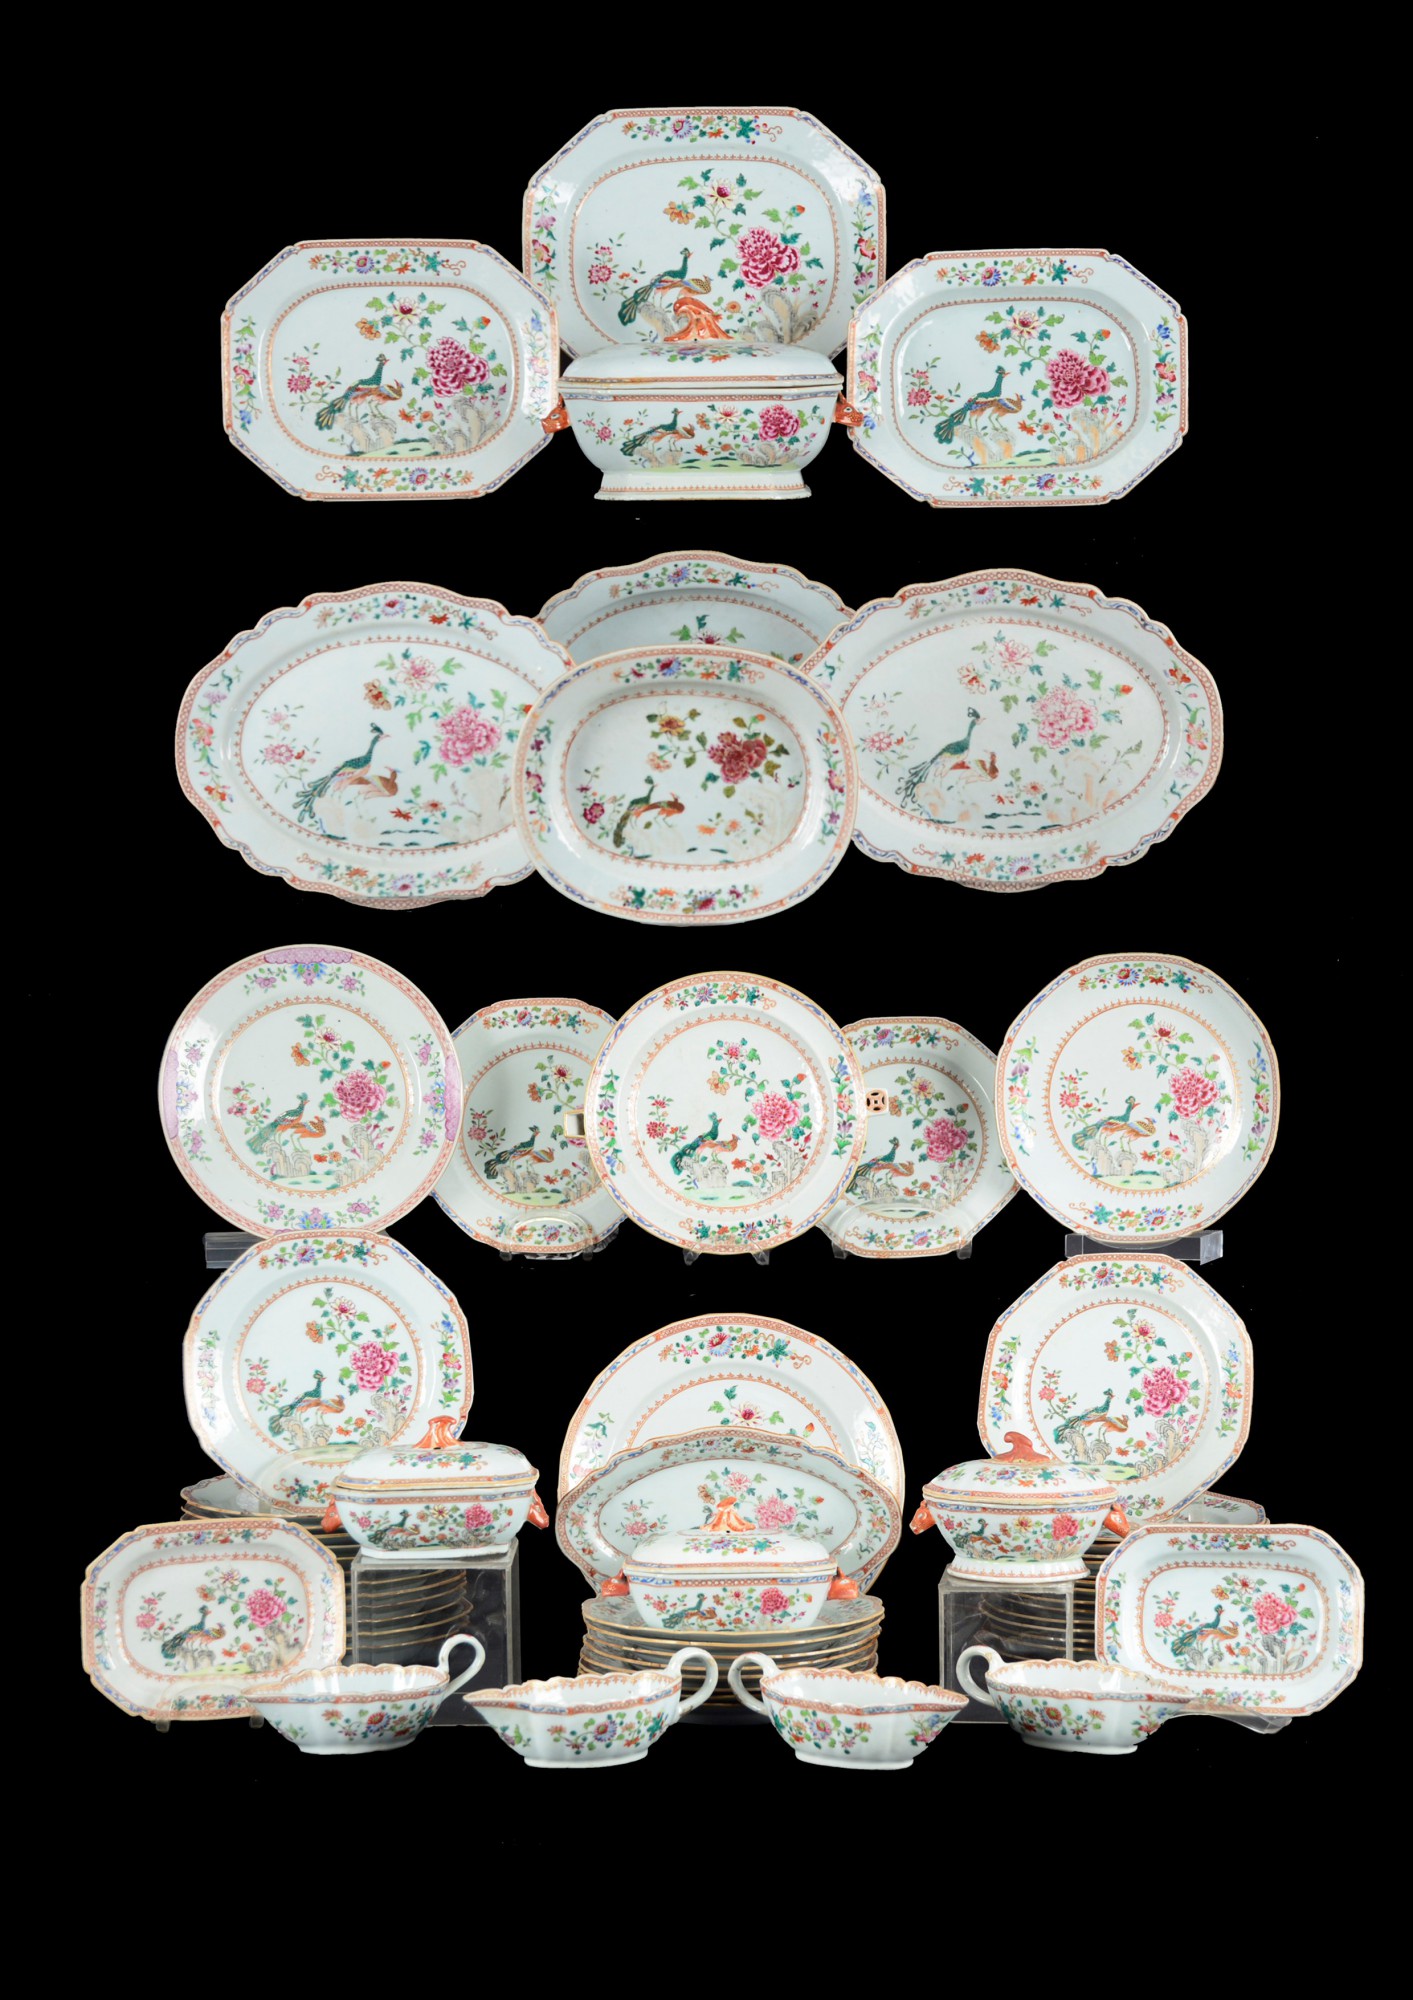 Raro e Importante Serviço de porcelana Companhia das Índias, dinastia Qing, reinado Qianlong (1736-1795) porcelana - 